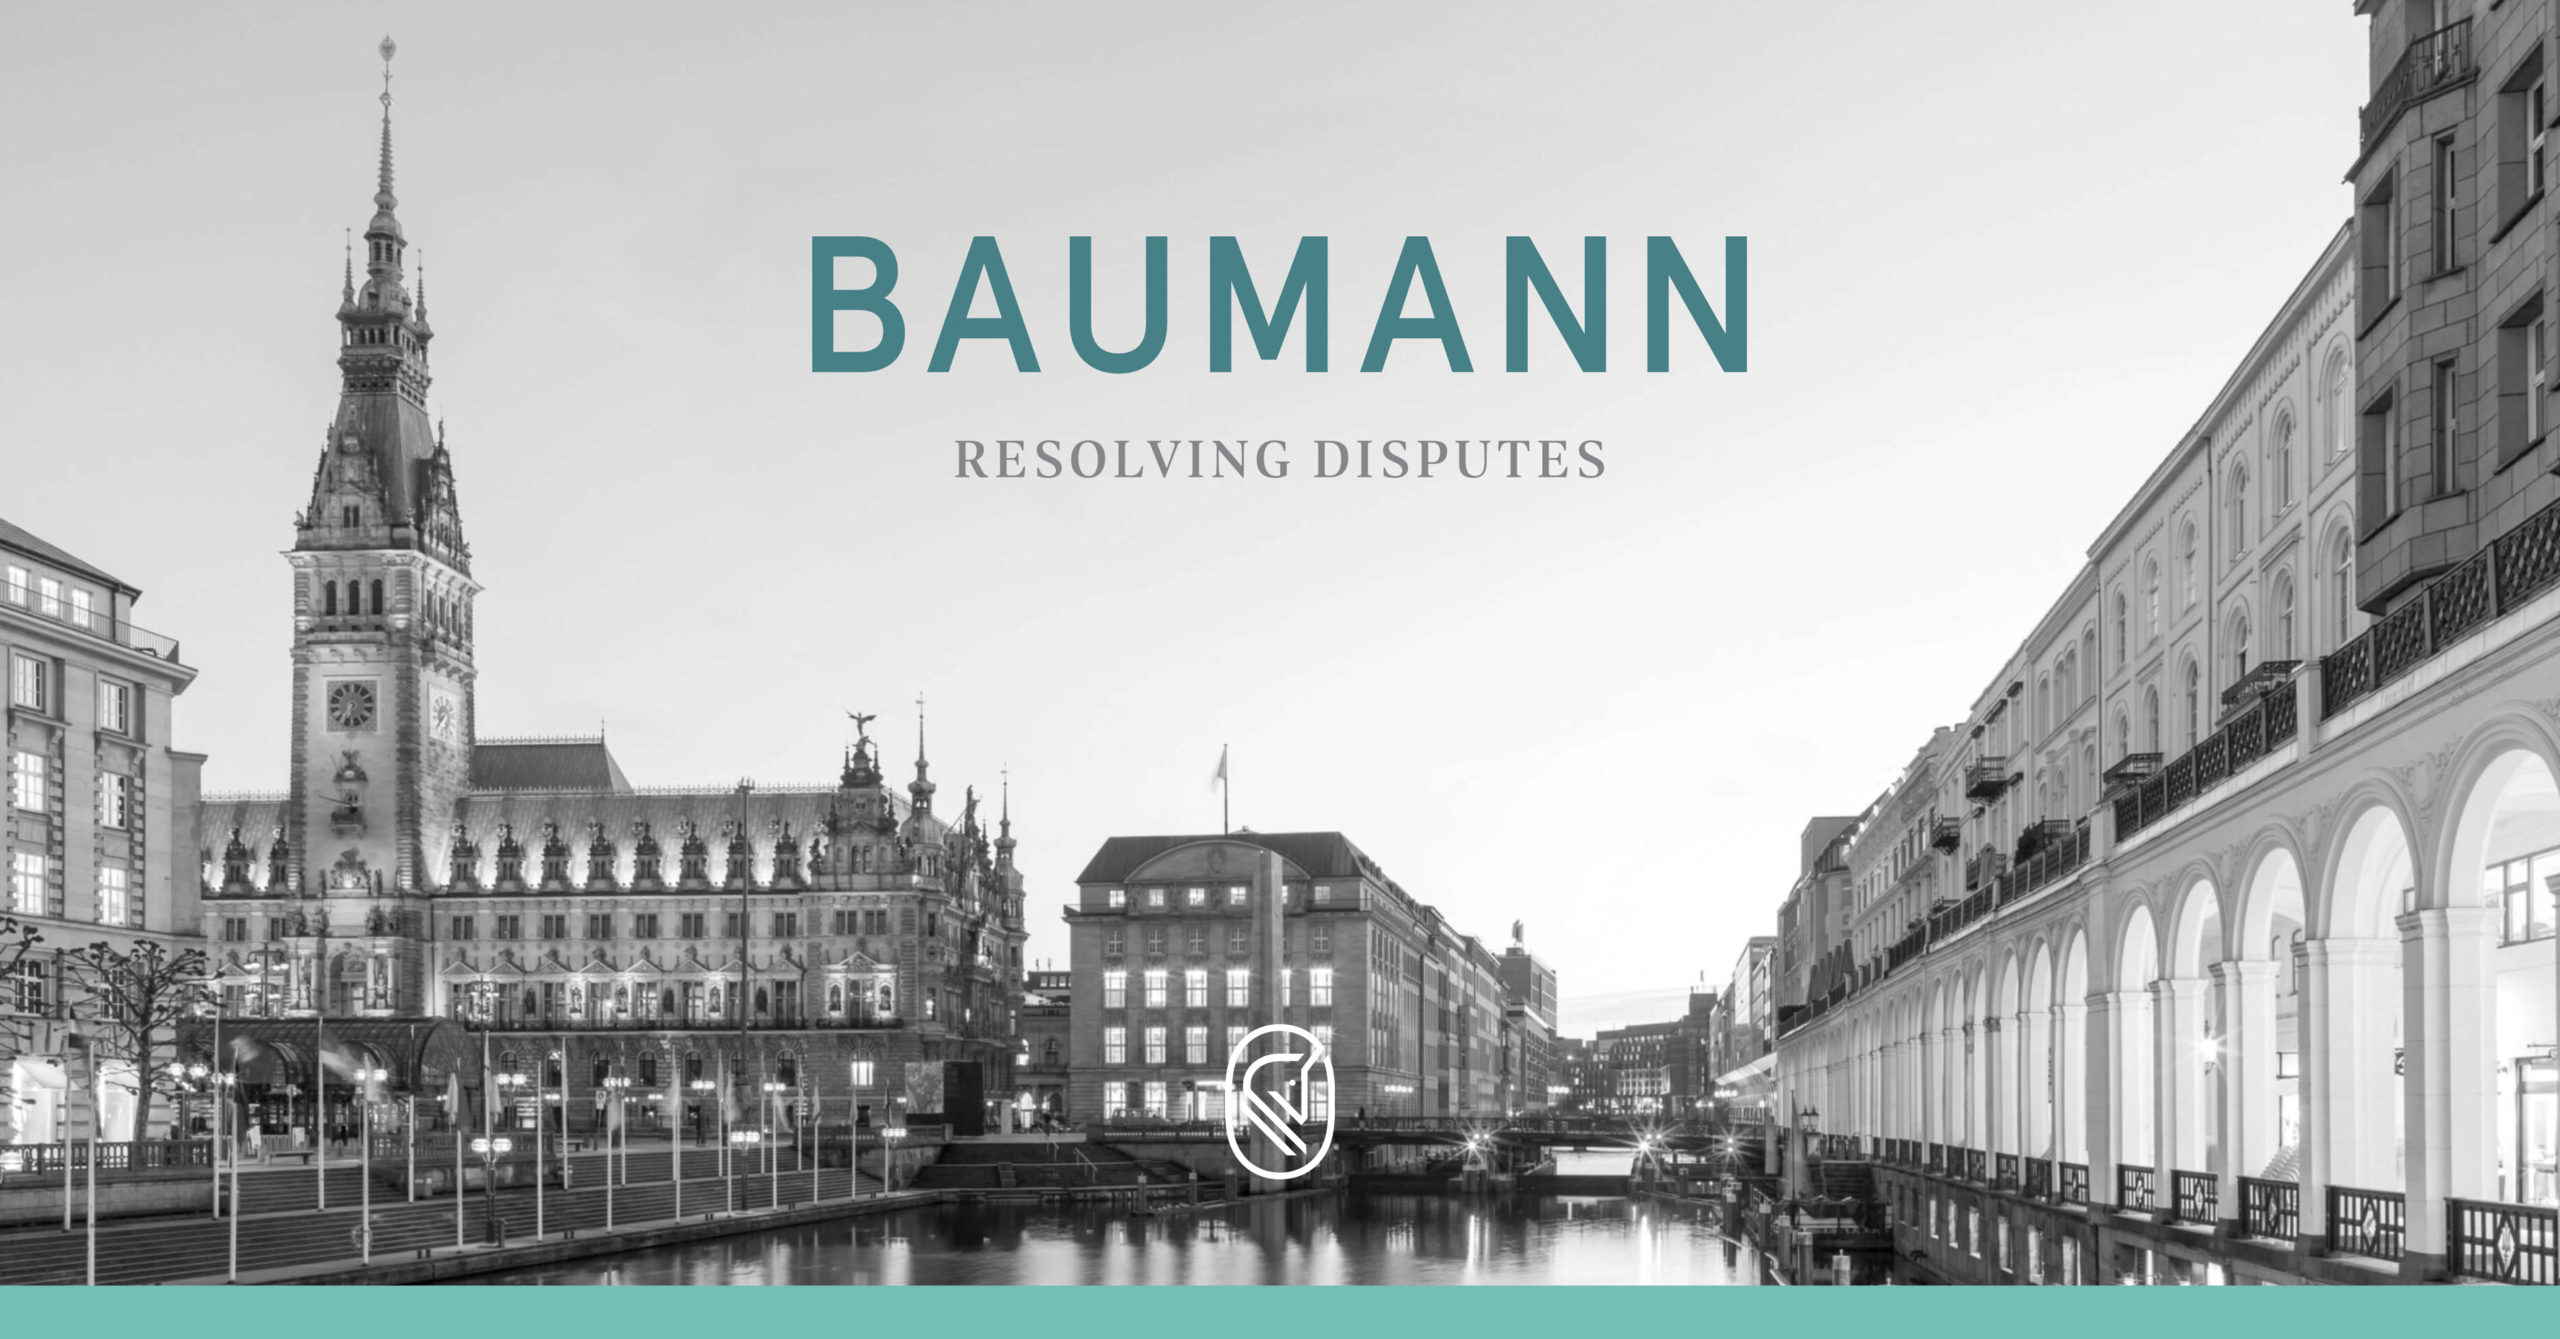 Baumann Resolving Disputes